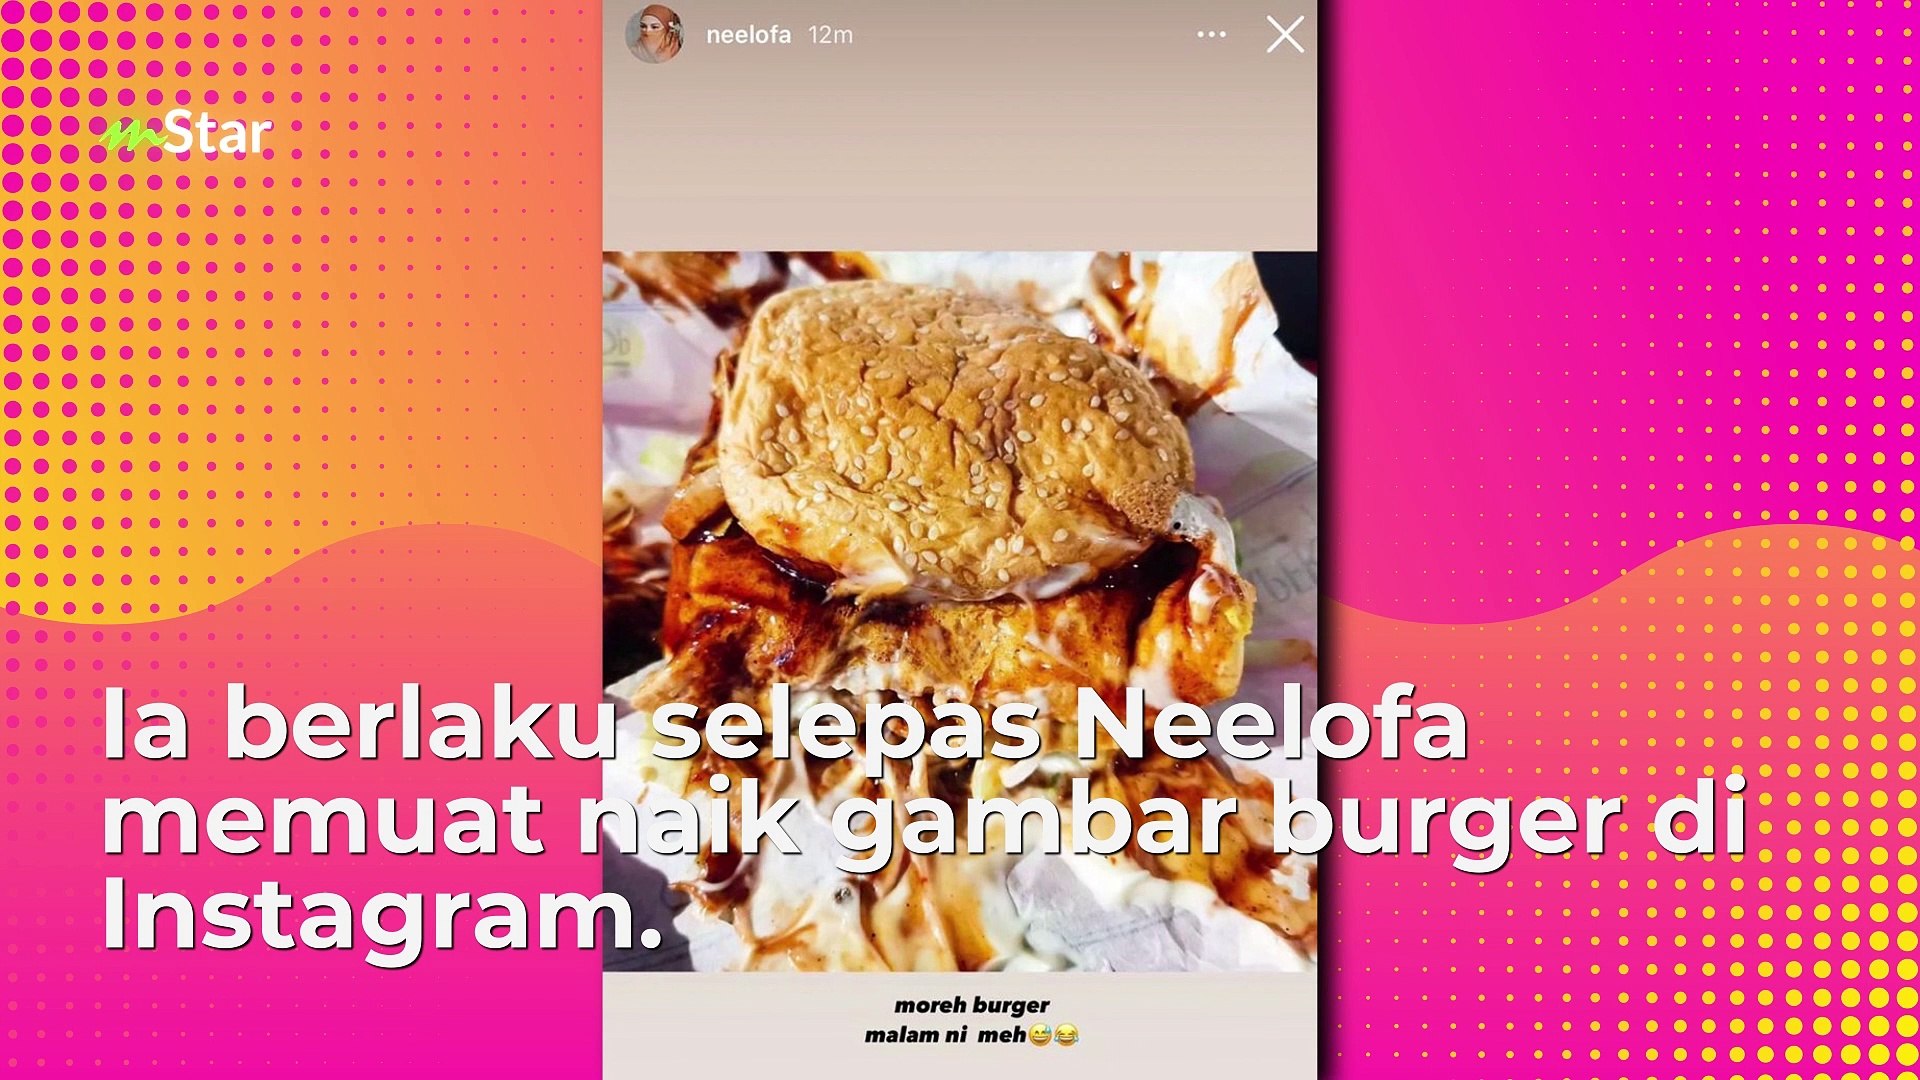 Neelofa burger